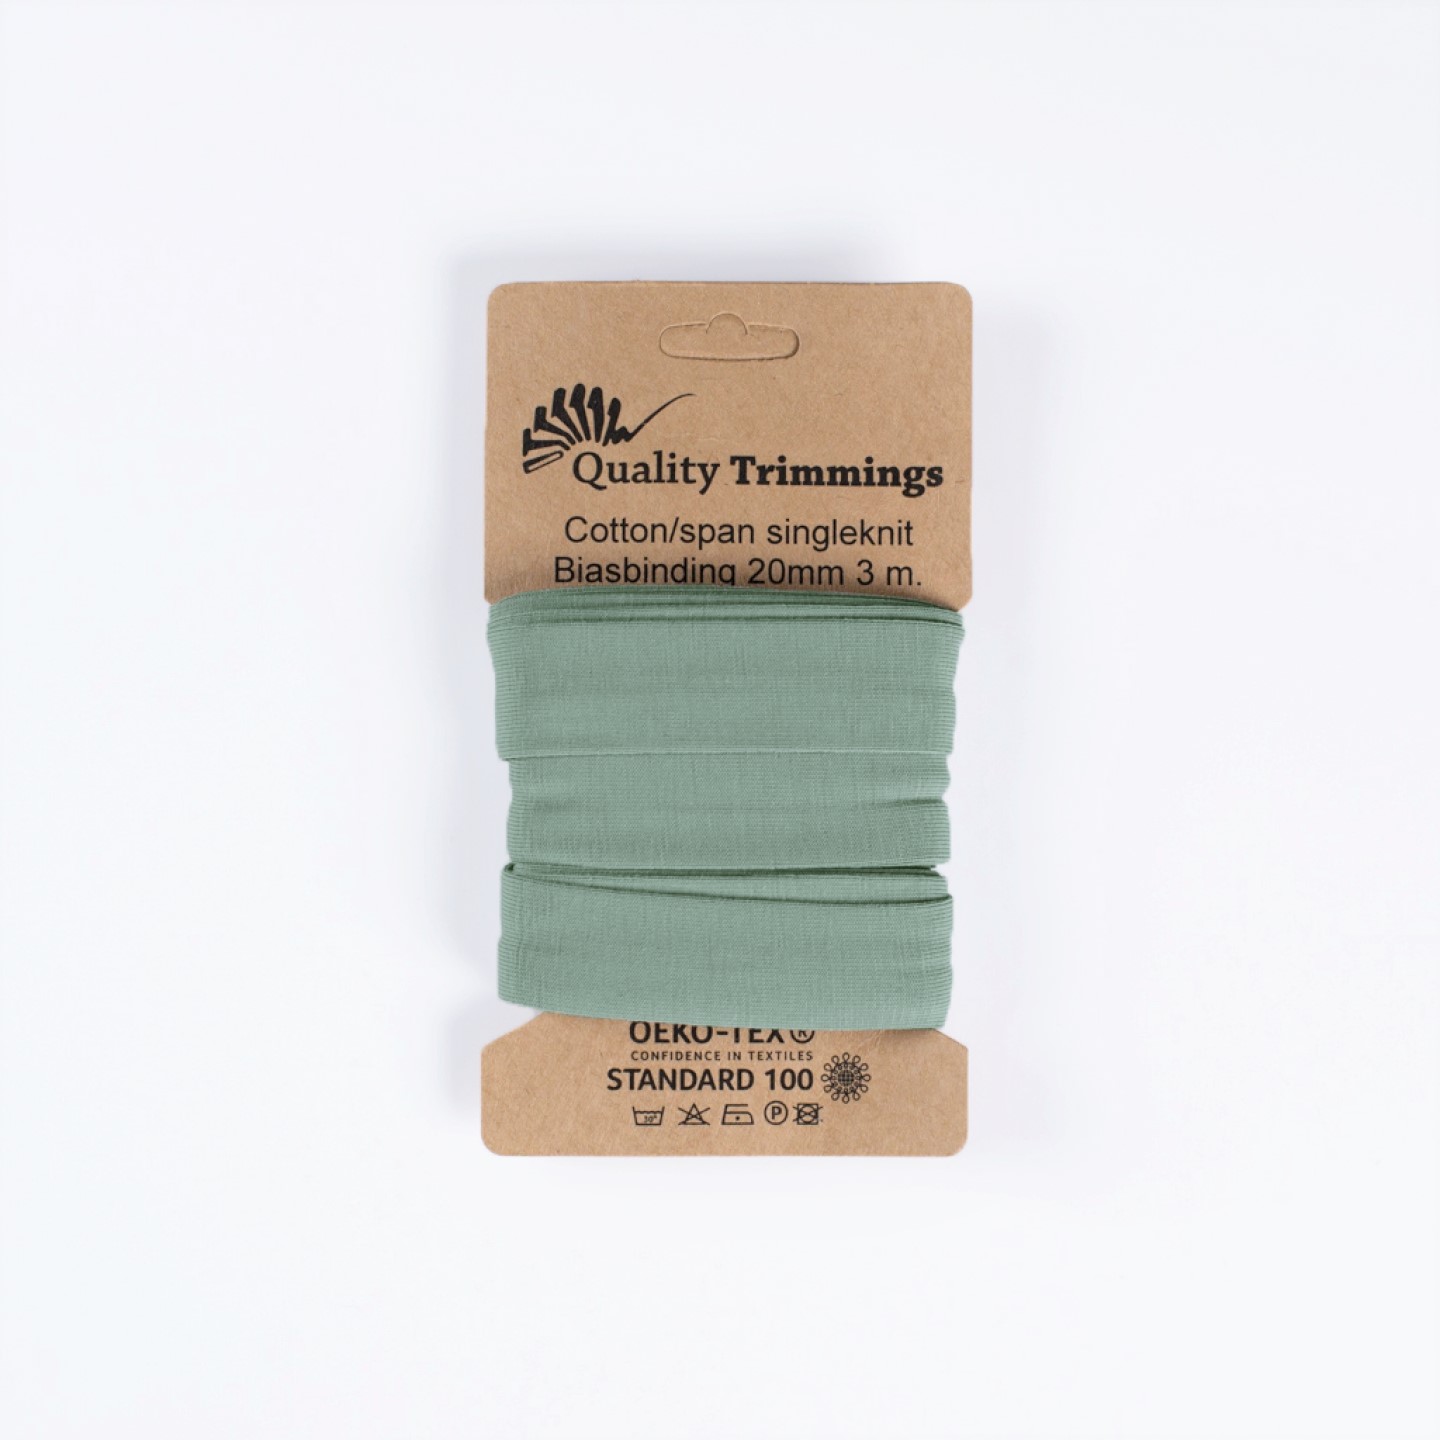 Schrägband Jersey Ben uni dusty mint (210) Karte 3m                                